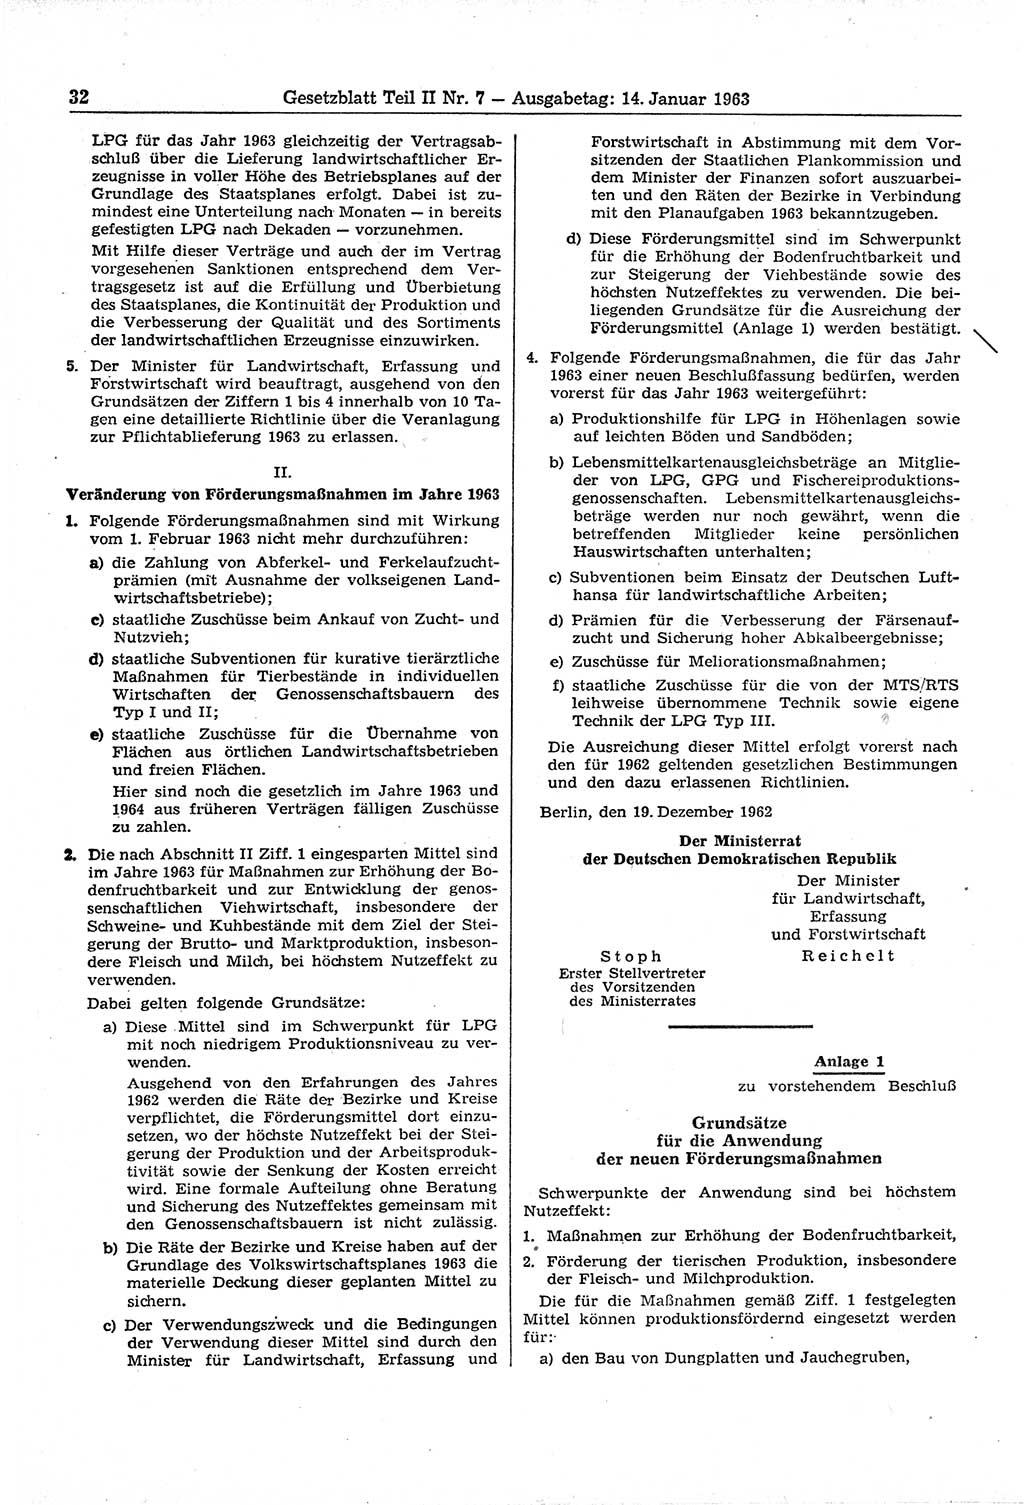 Gesetzblatt (GBl.) der Deutschen Demokratischen Republik (DDR) Teil ⅠⅠ 1963, Seite 32 (GBl. DDR ⅠⅠ 1963, S. 32)